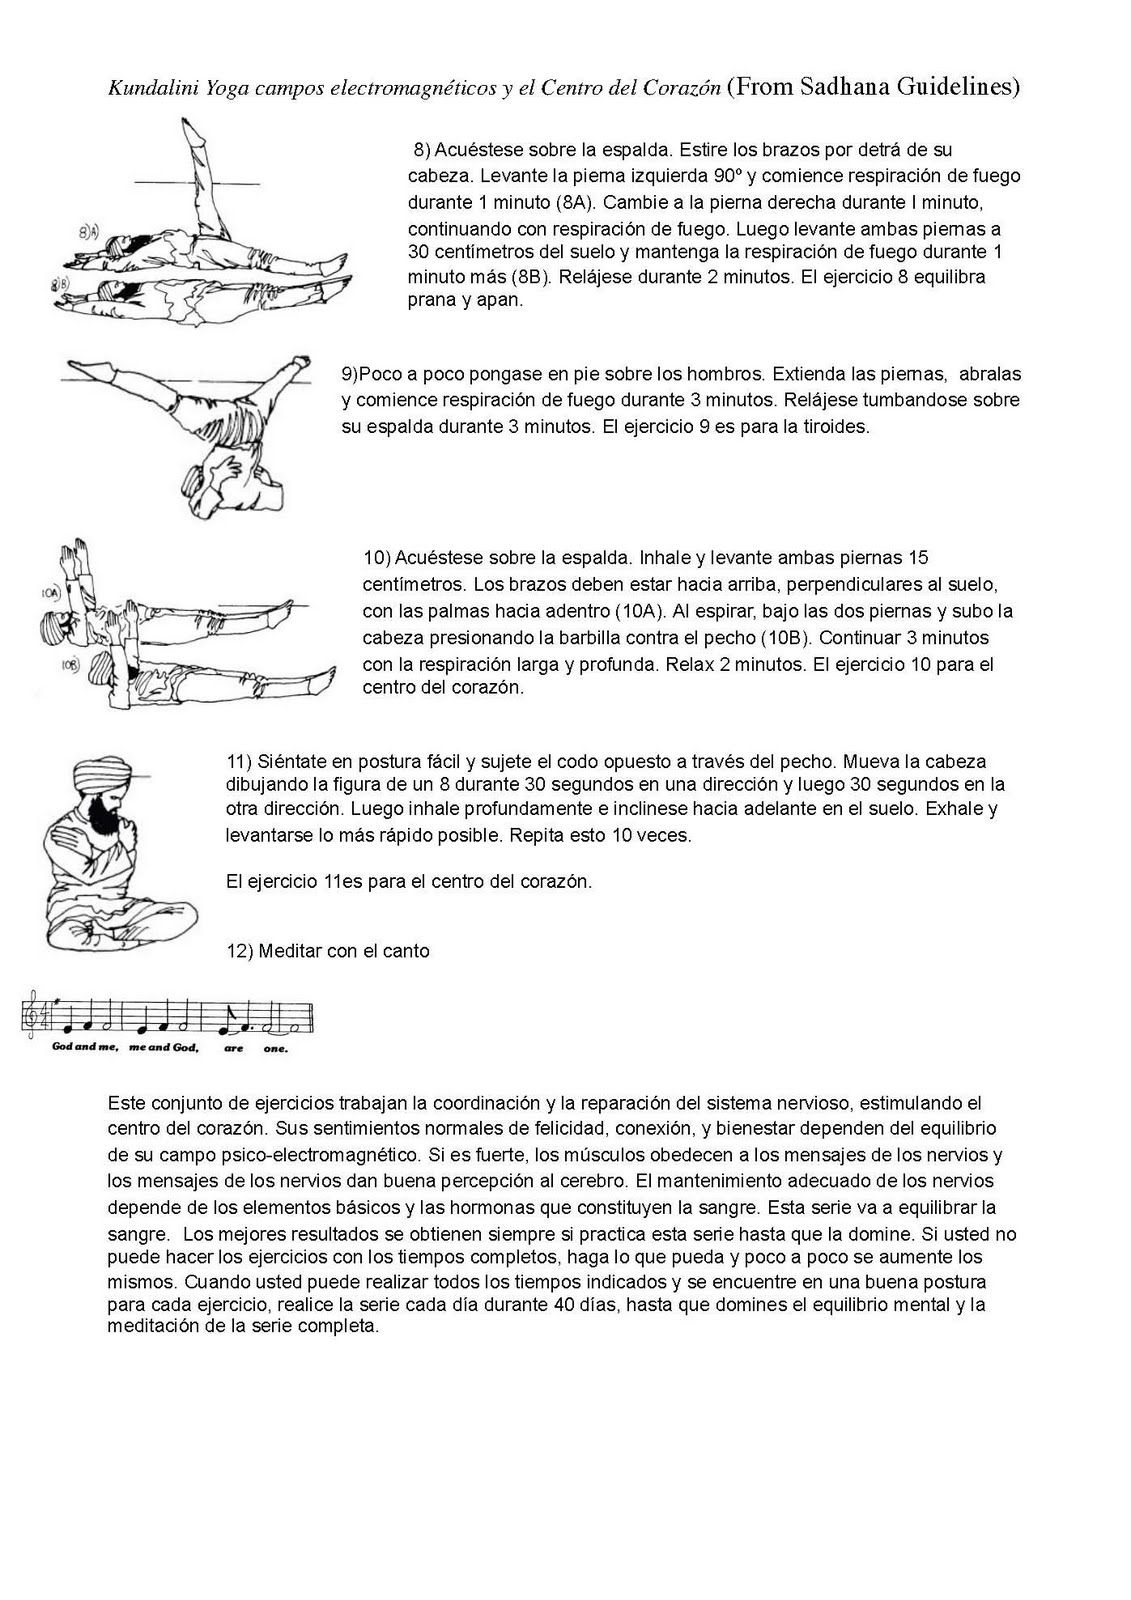 kundalini yoga manual de sadhana pdf